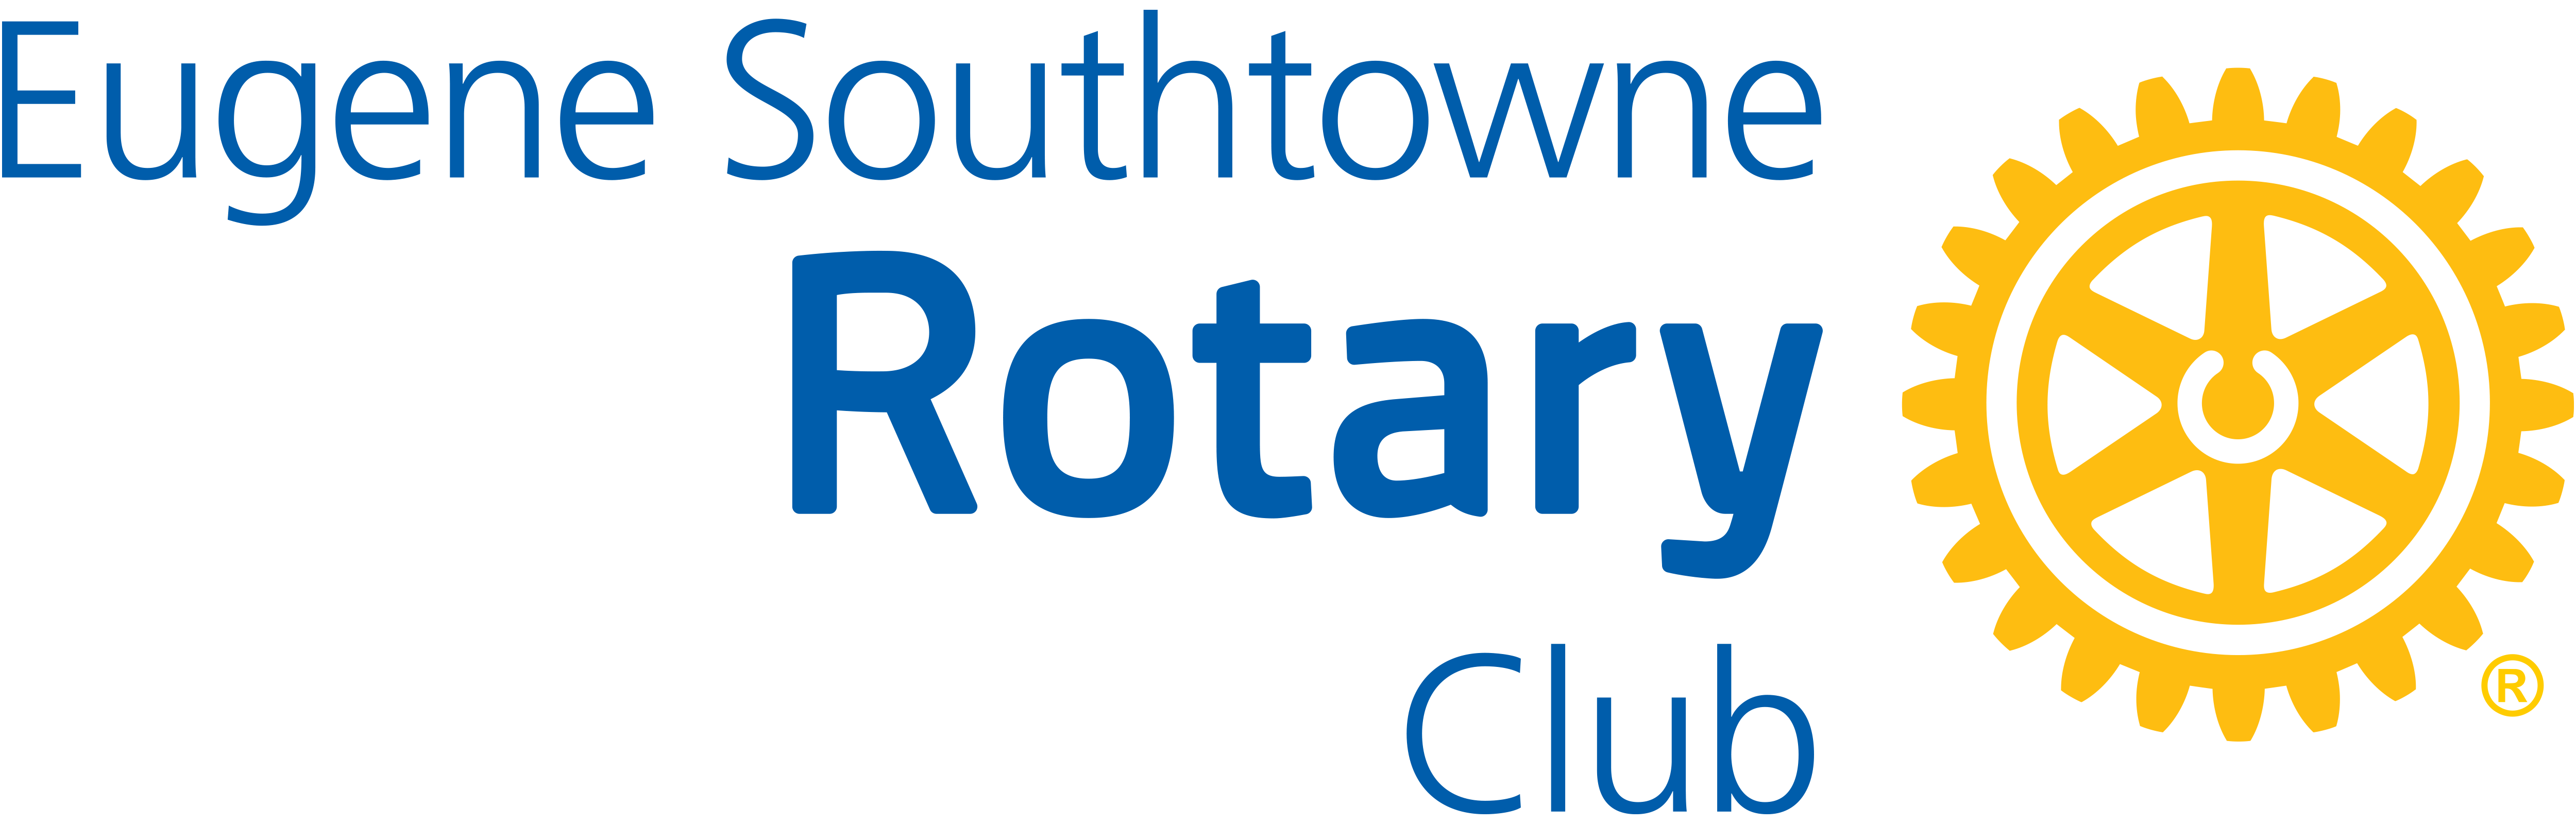 Eugene Southtowne Rotary Club logo